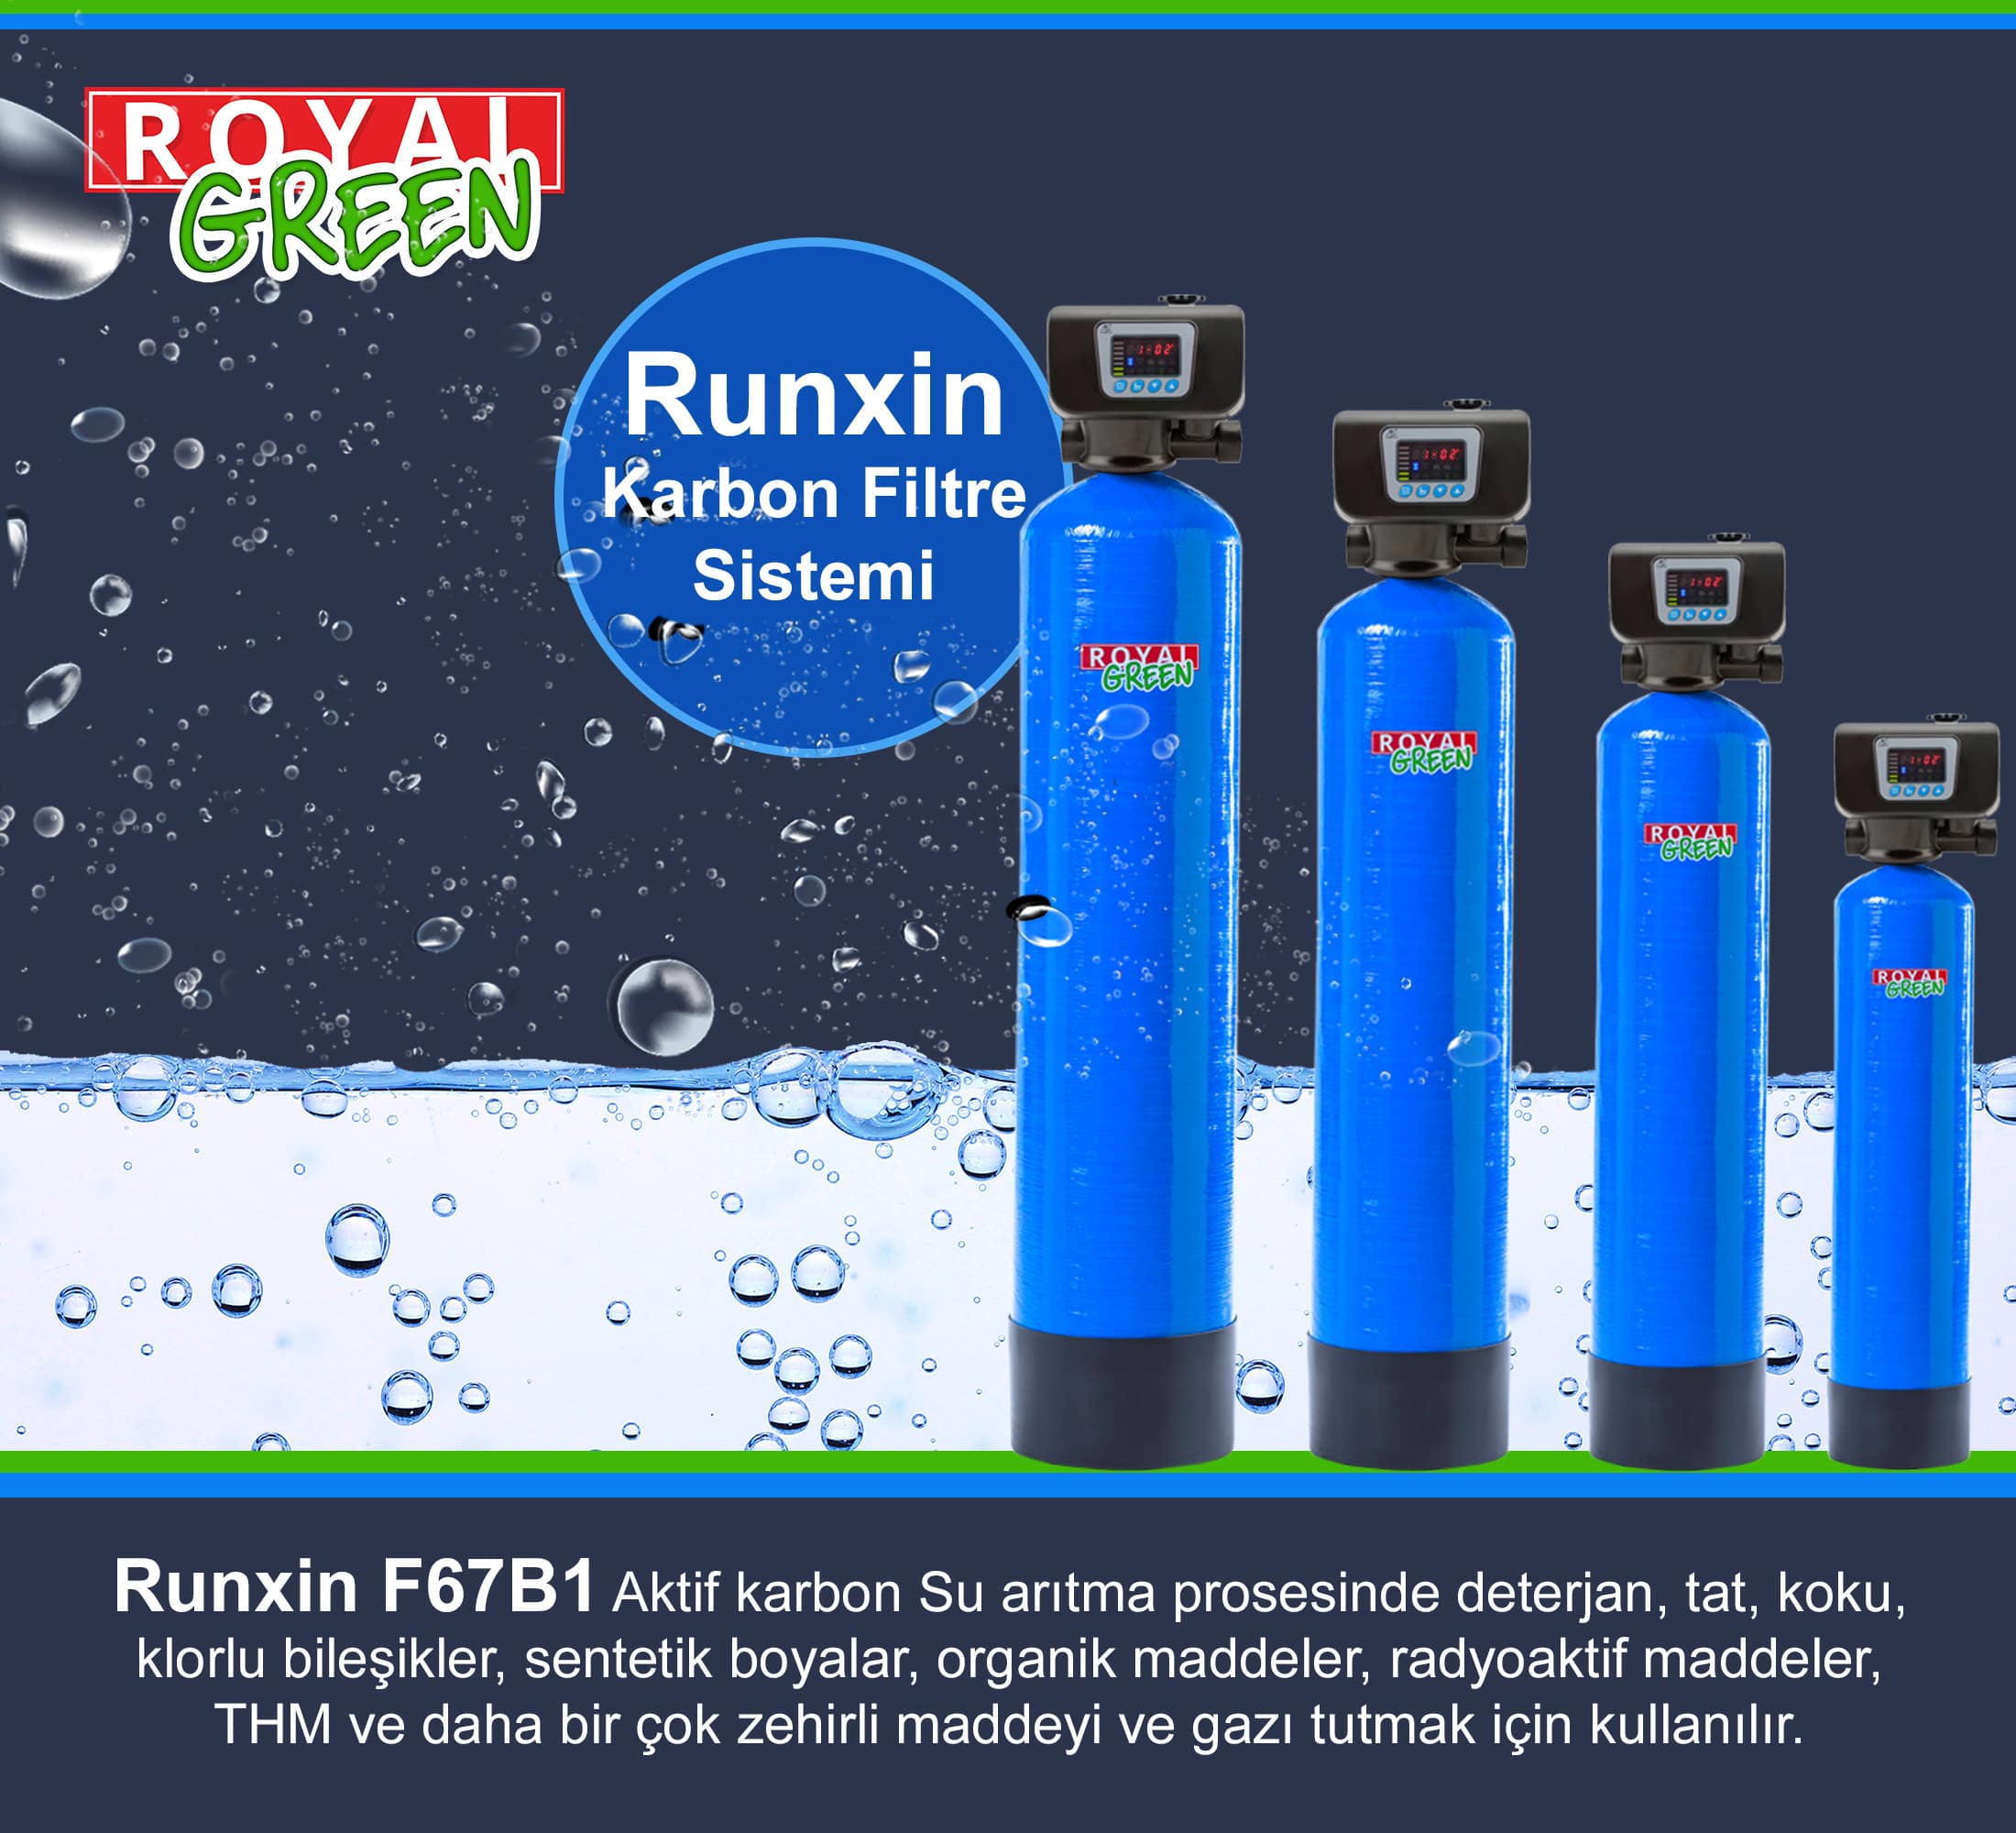 Runxin F67B1 Karbon Filtre Sistemi Banner min